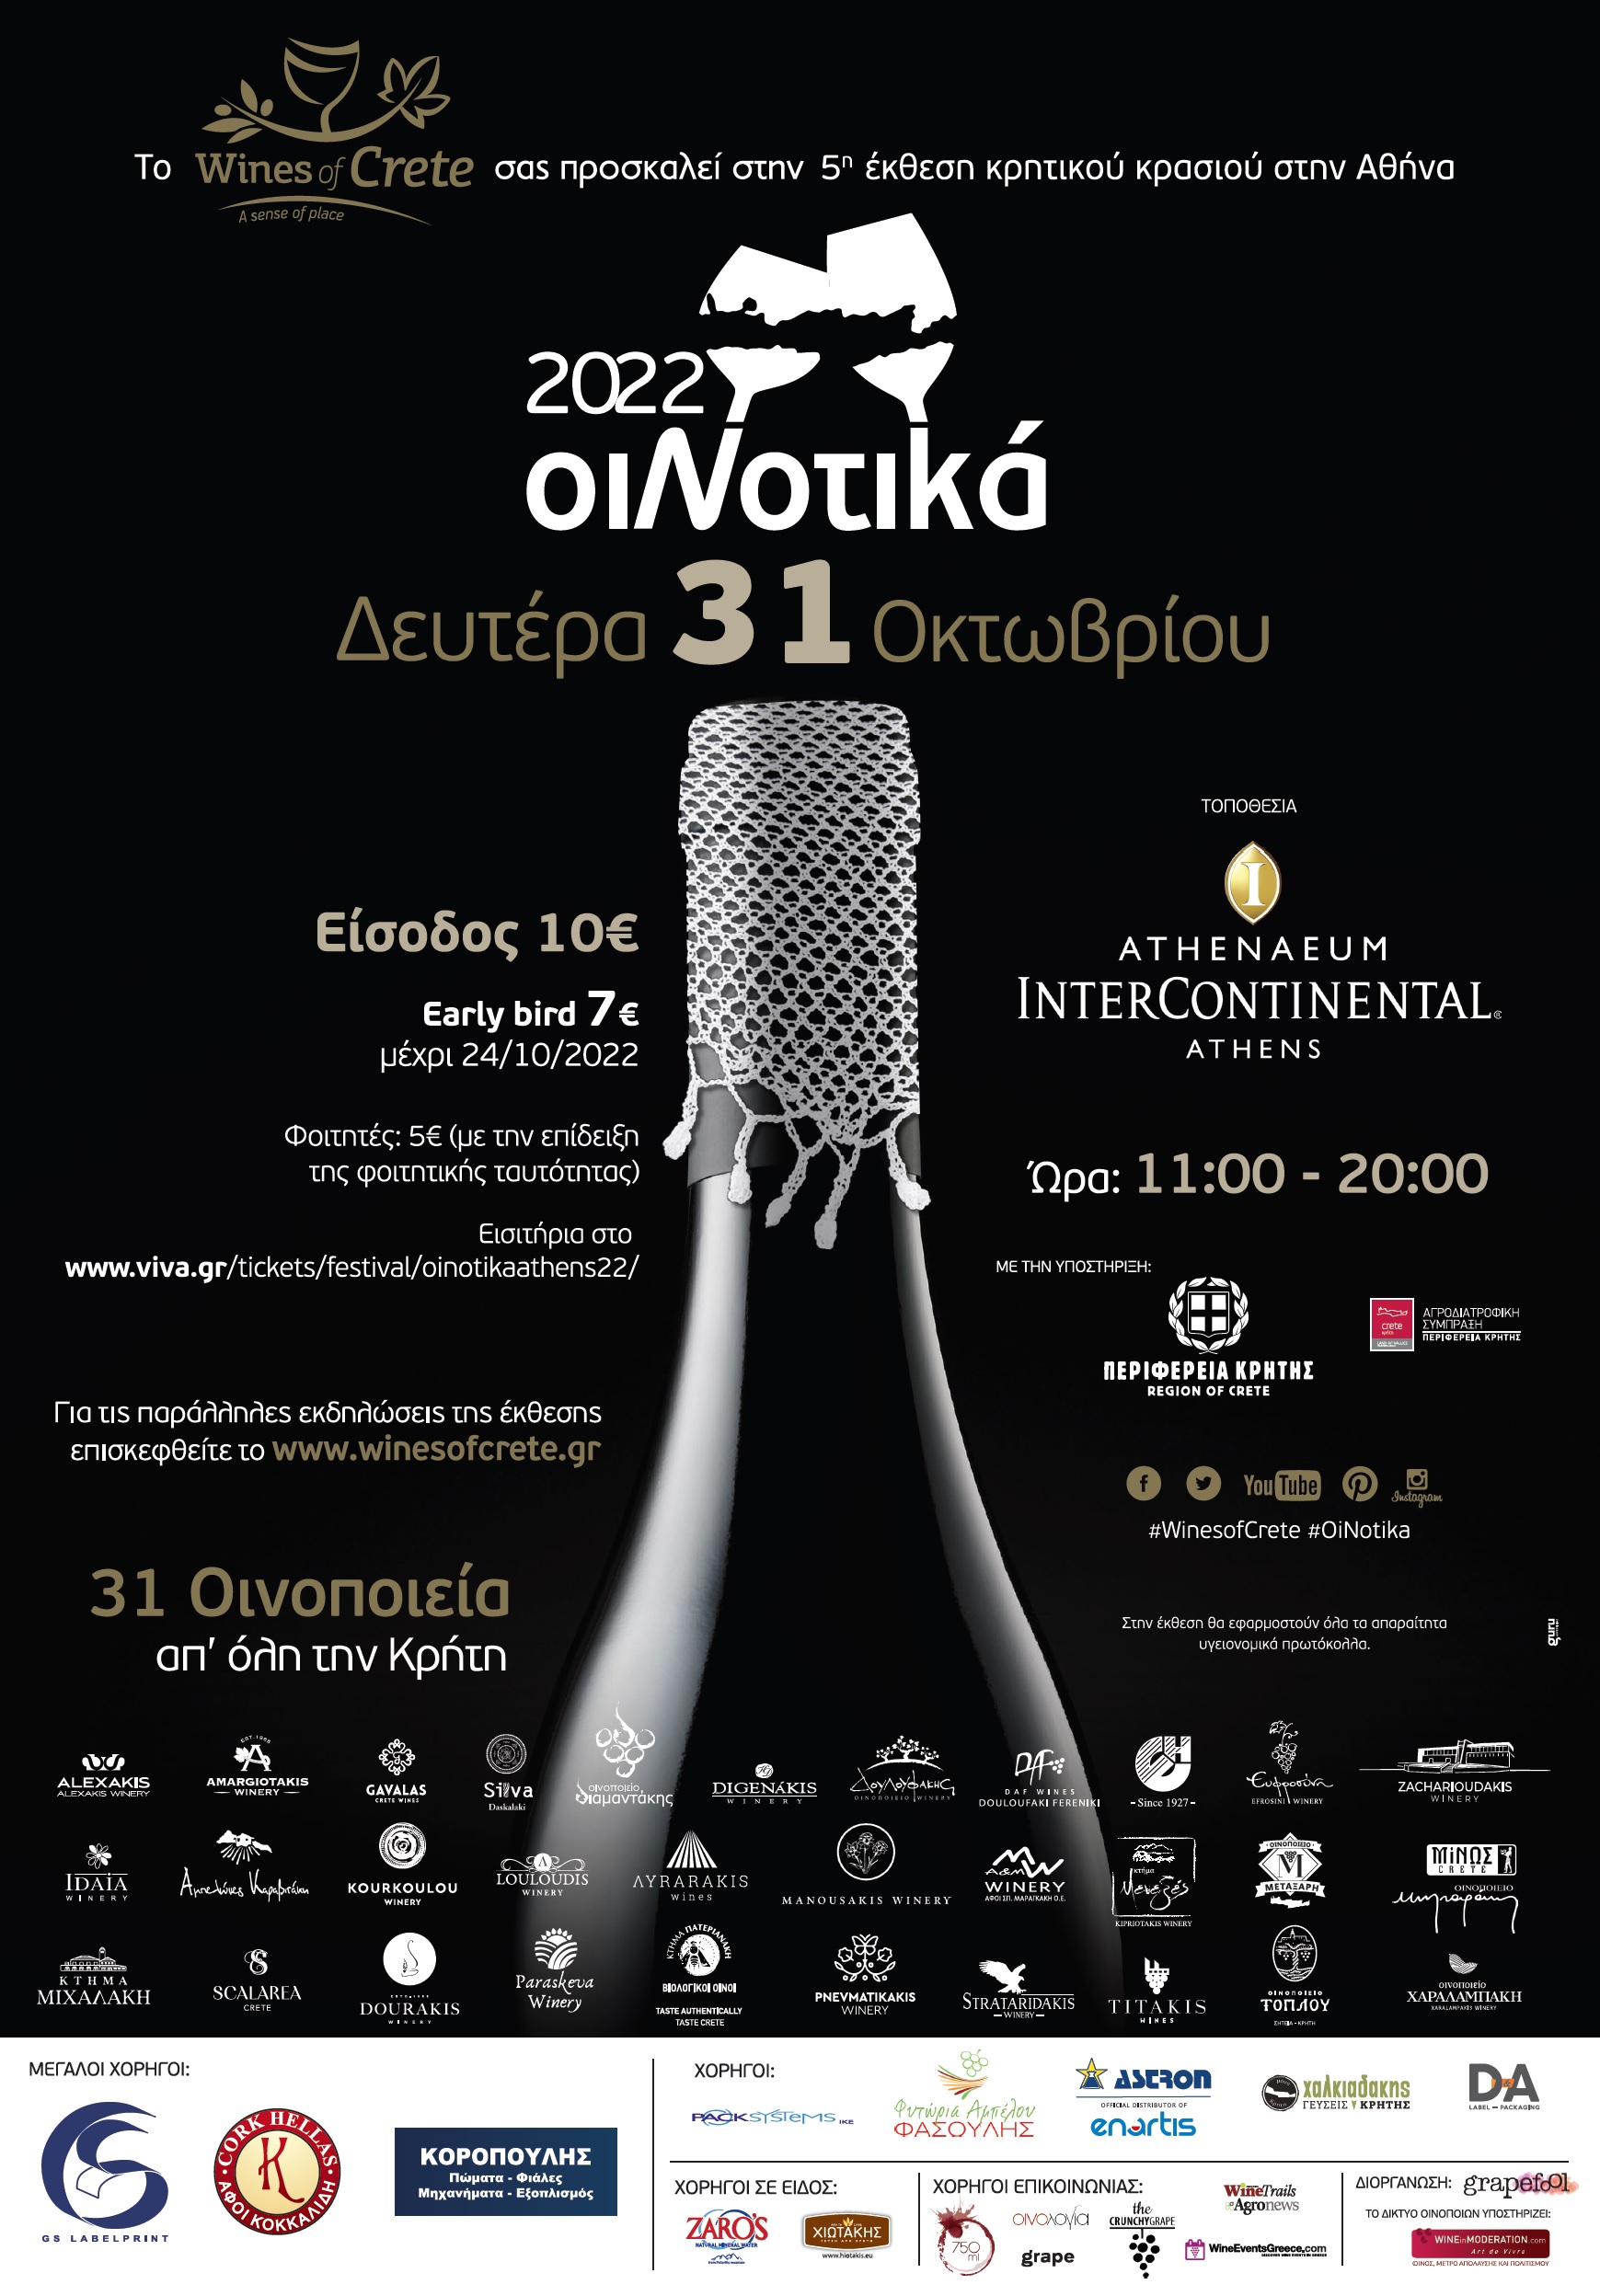 Η έκθεση κρασιού ΟιΝοτικά έρχεται στην Αθήνα την Δευτέρα 31 Οκτωβρίου 2022